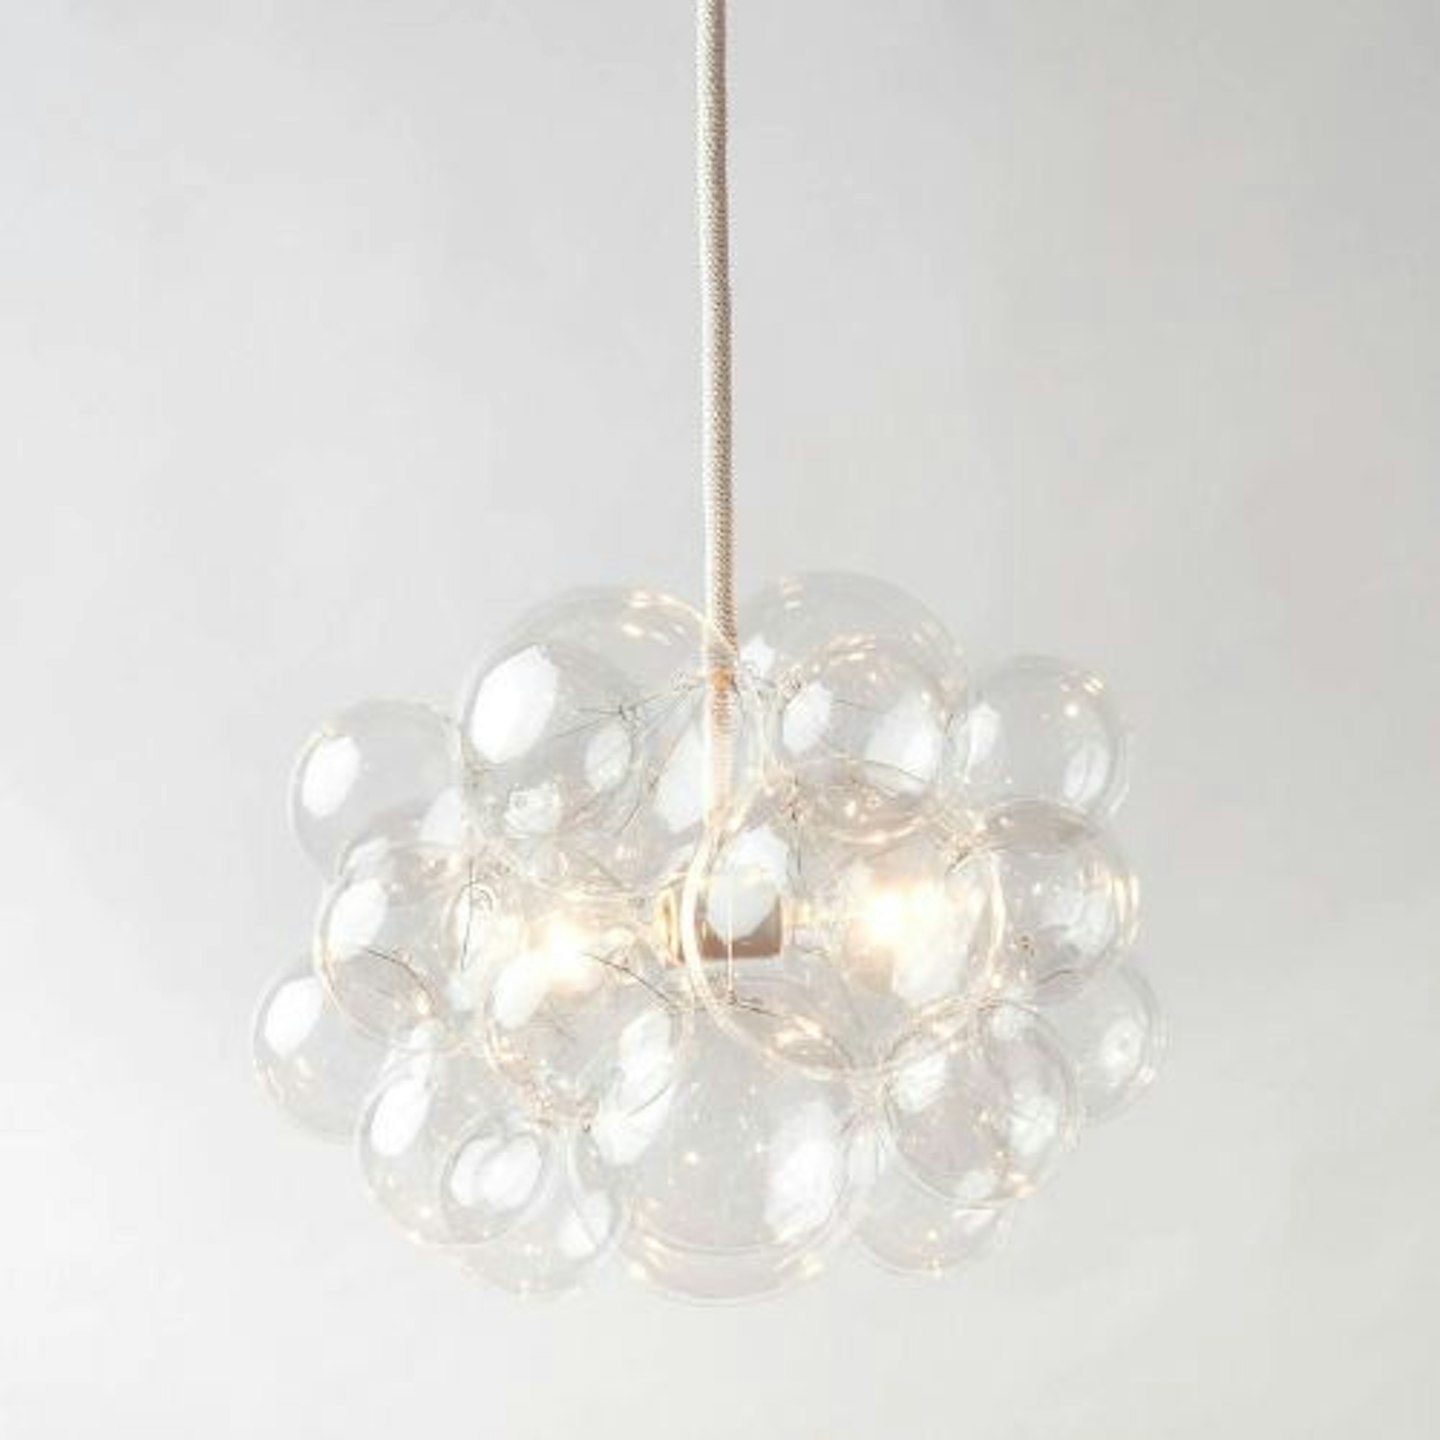 The 25 Bubble Chandelier (18" diameter) • Custom Cord Options • LED Light • Ceiling Light • Modern Chandelier